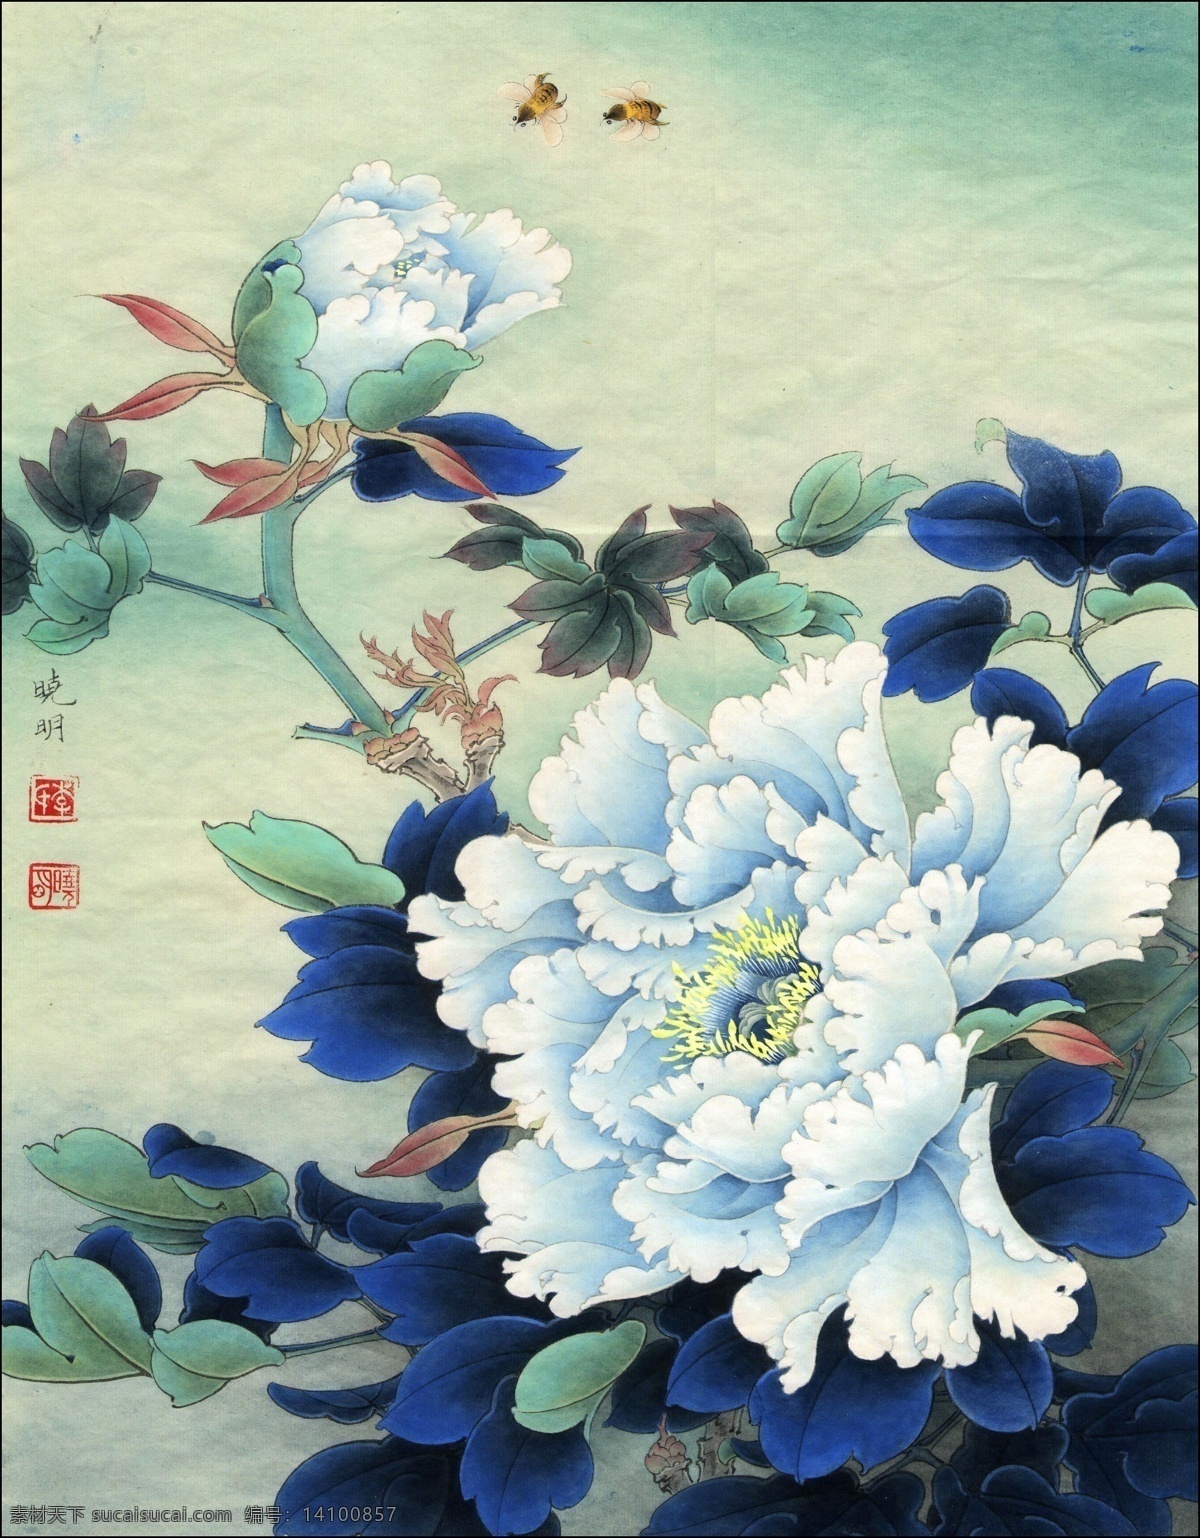 中式 古典 花鸟 工笔画 中国风绘画 精美绘画 植物花鸟 装饰画 古典画 牡丹花朵 绿叶 繁花蝴蝶 文化艺术 绘画书法